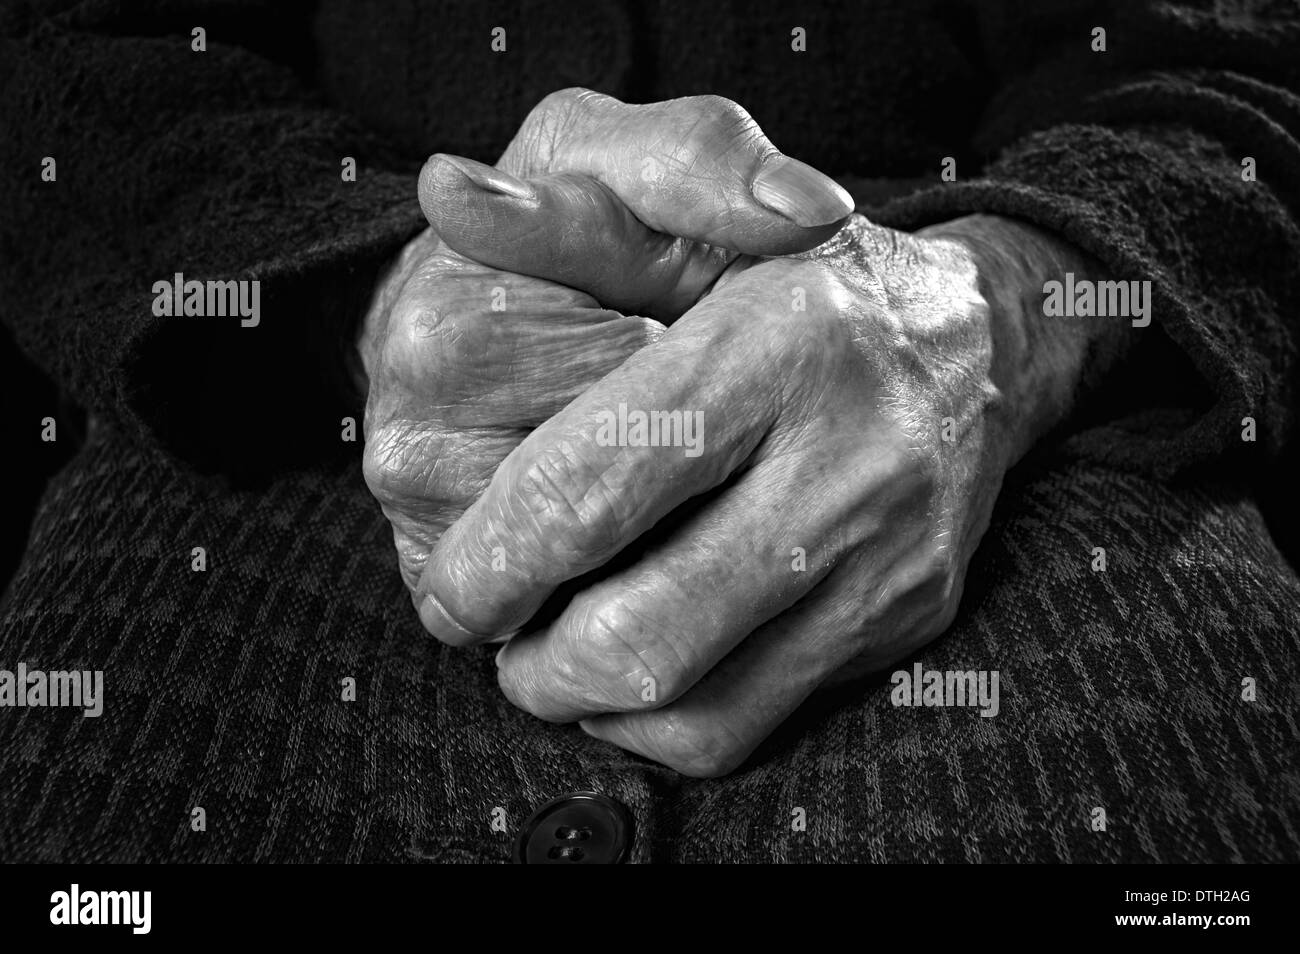 Primo piano di una vecchia donna mani. Immagine in bianco e nero. Foto Stock